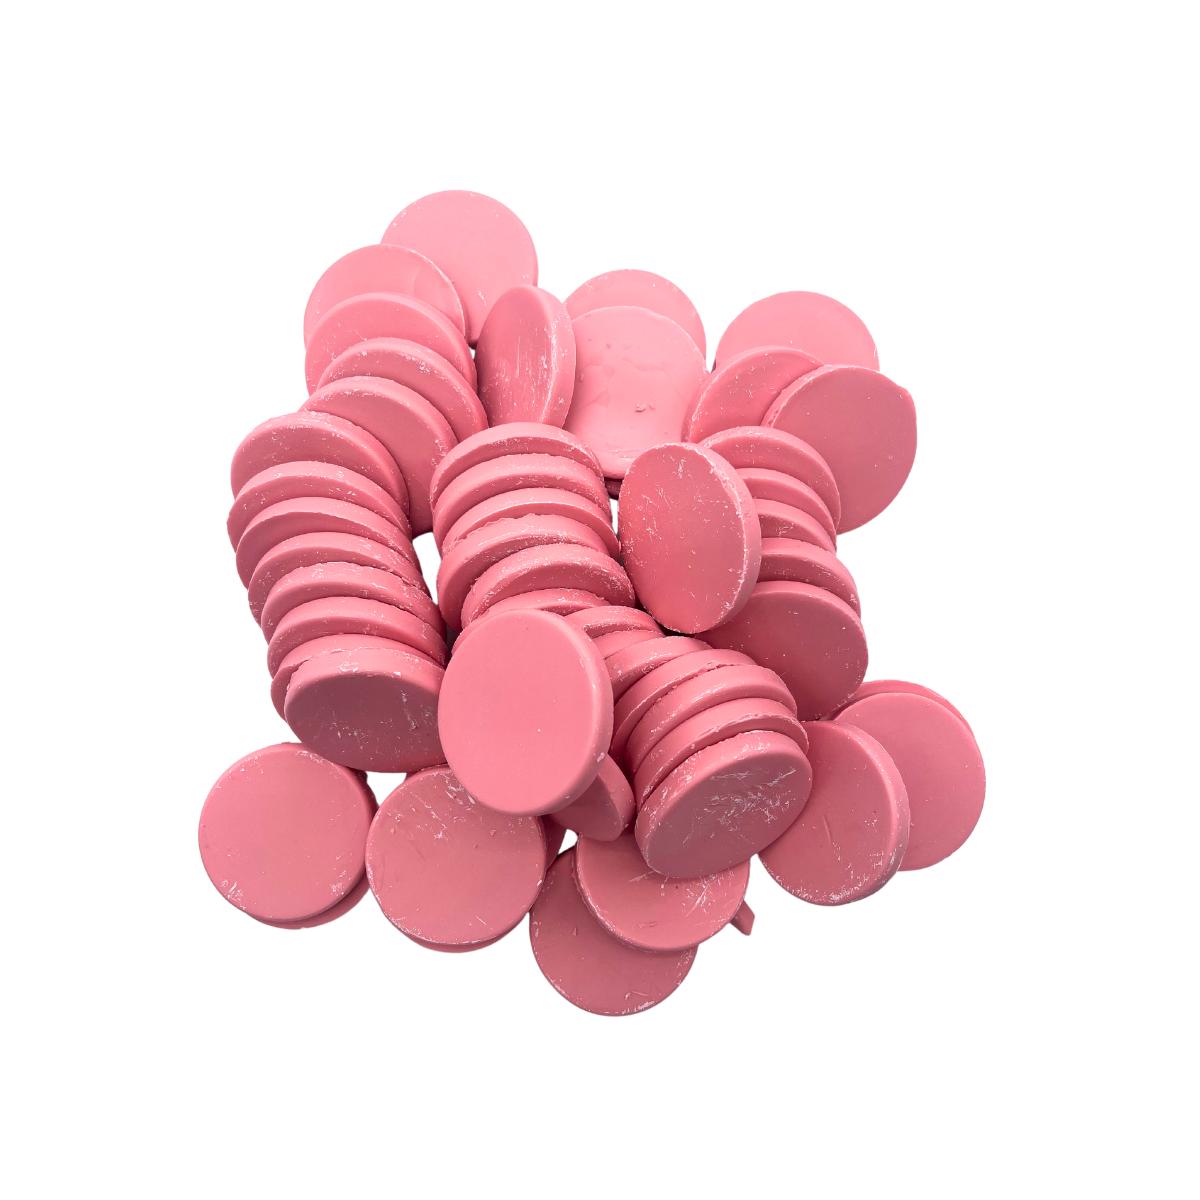 Depilcompany Hard Wax Pink – Cera dura profesional de alto rendimiento con ingredientes activos especiales – 2.2 lbs. (3 UND)